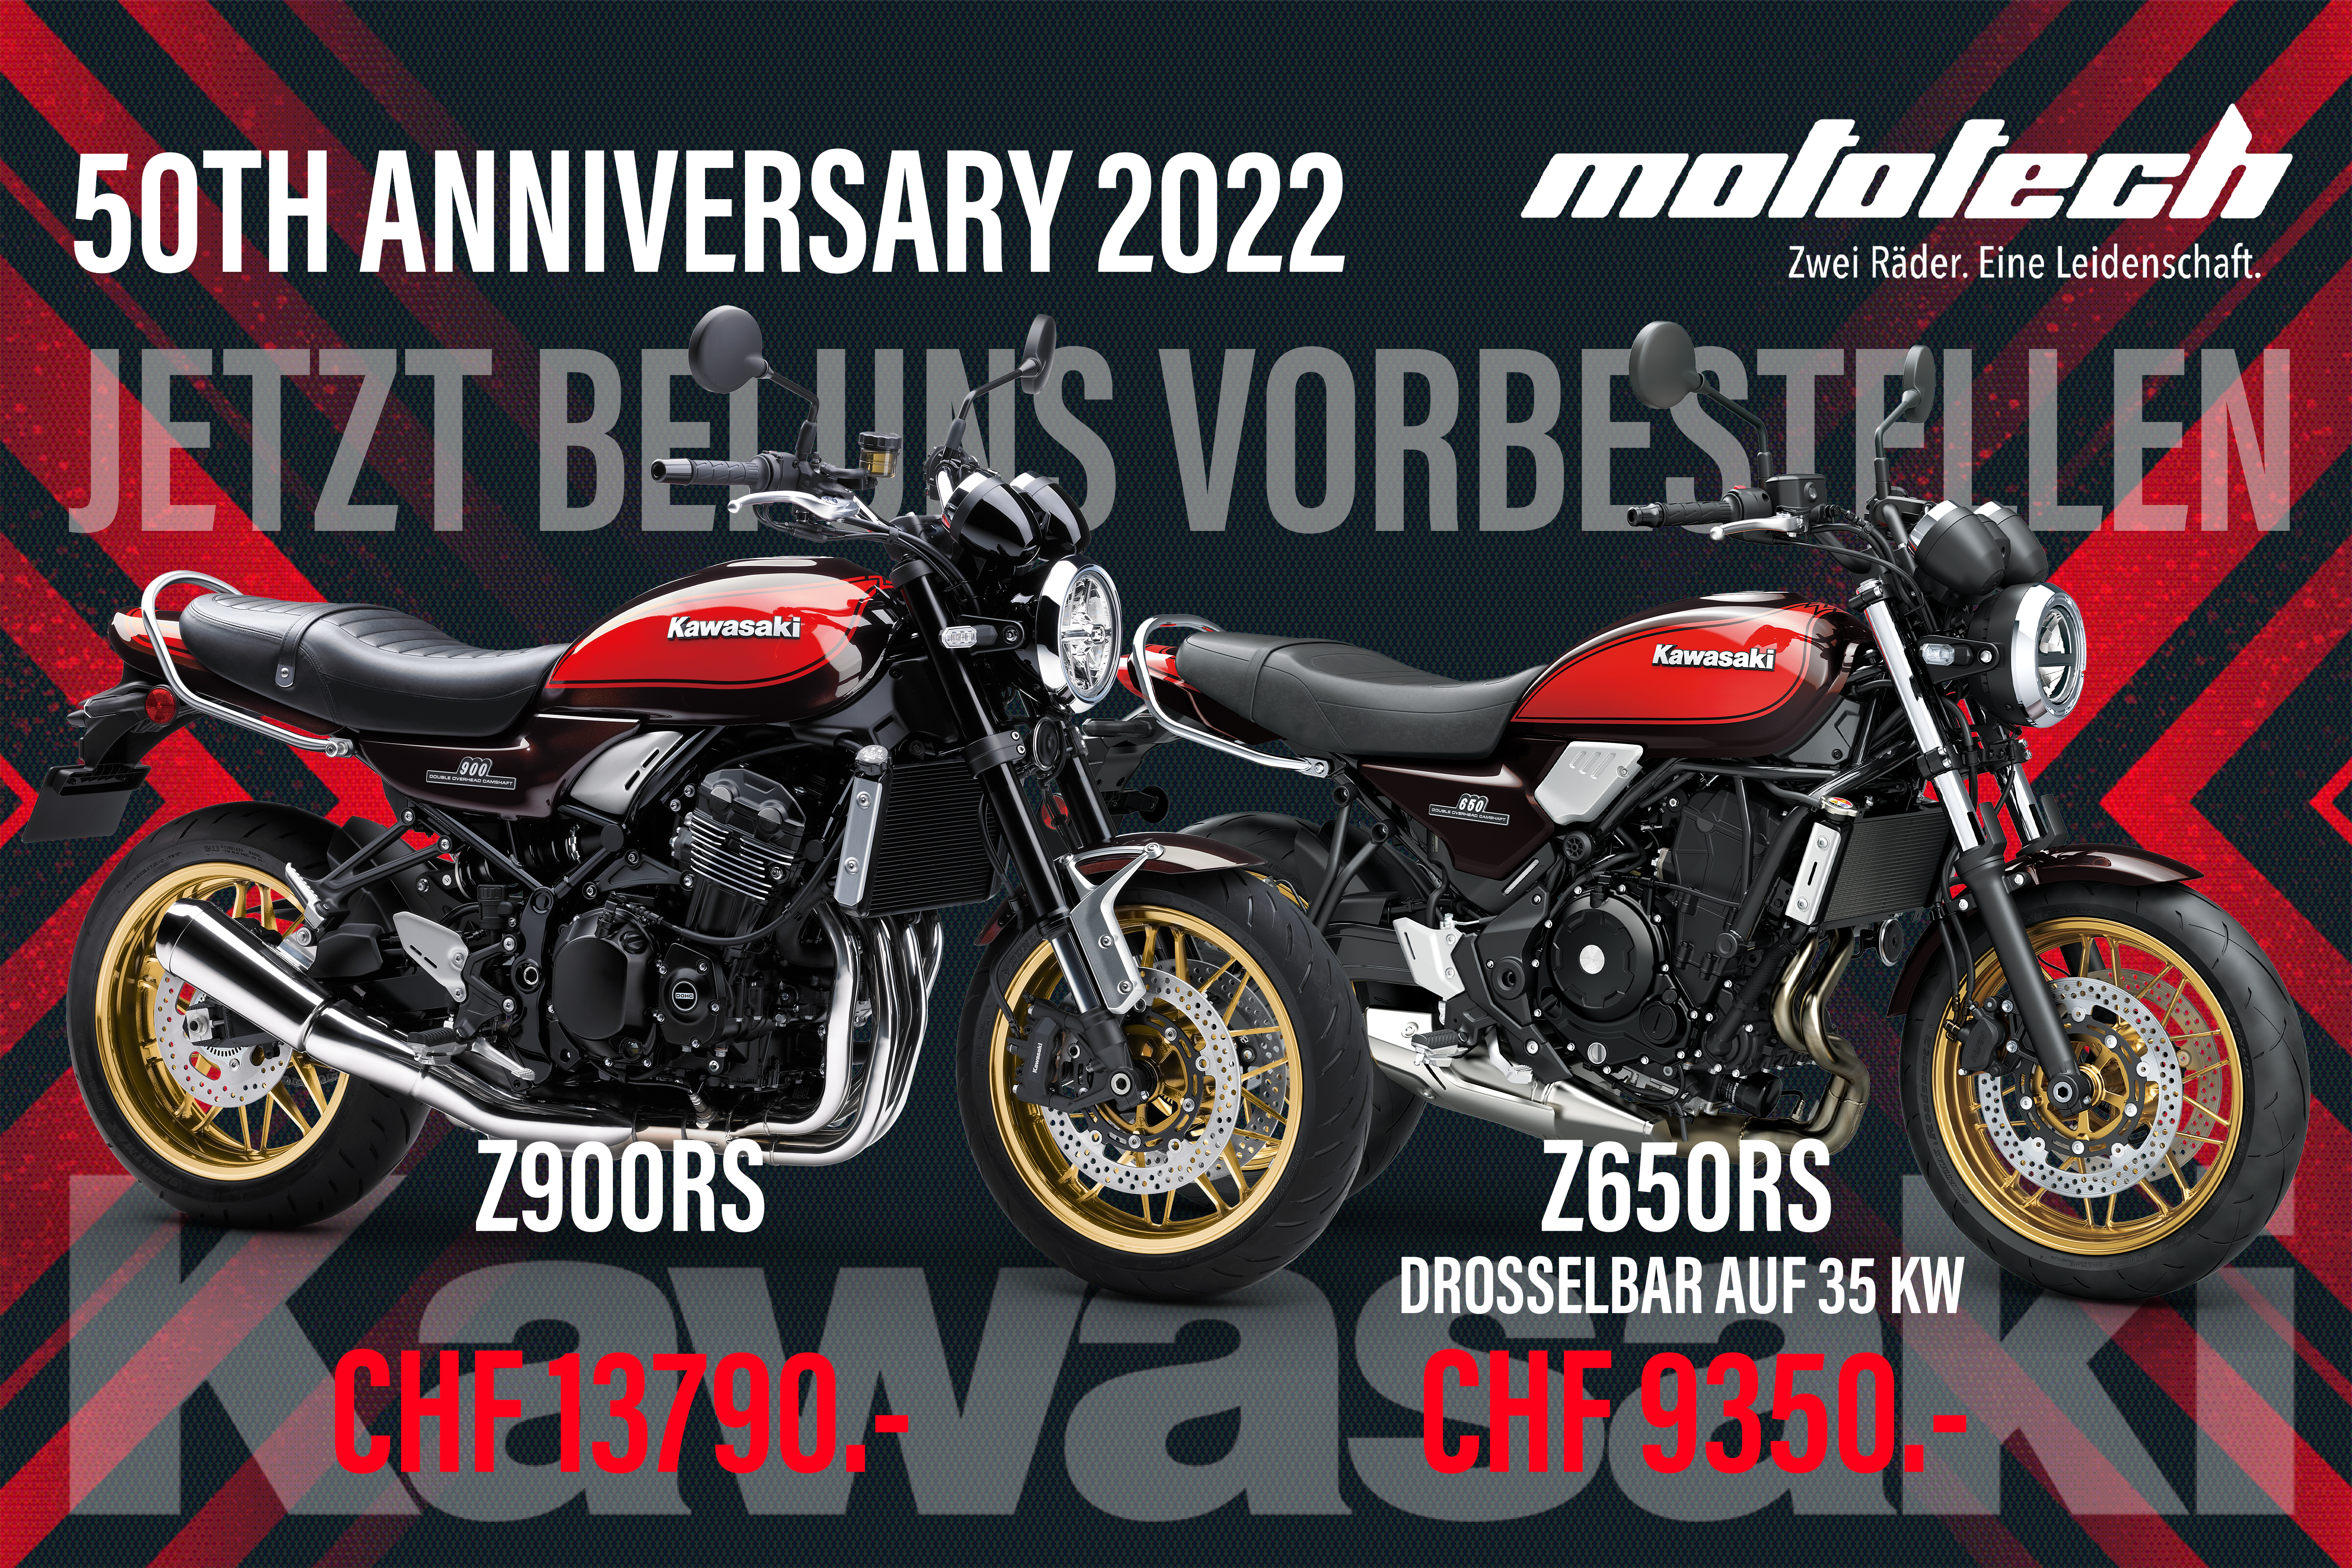 Z650RS und Z900RS als 50 Jahre Edition  - Jetzt bei uns vorbestellen!